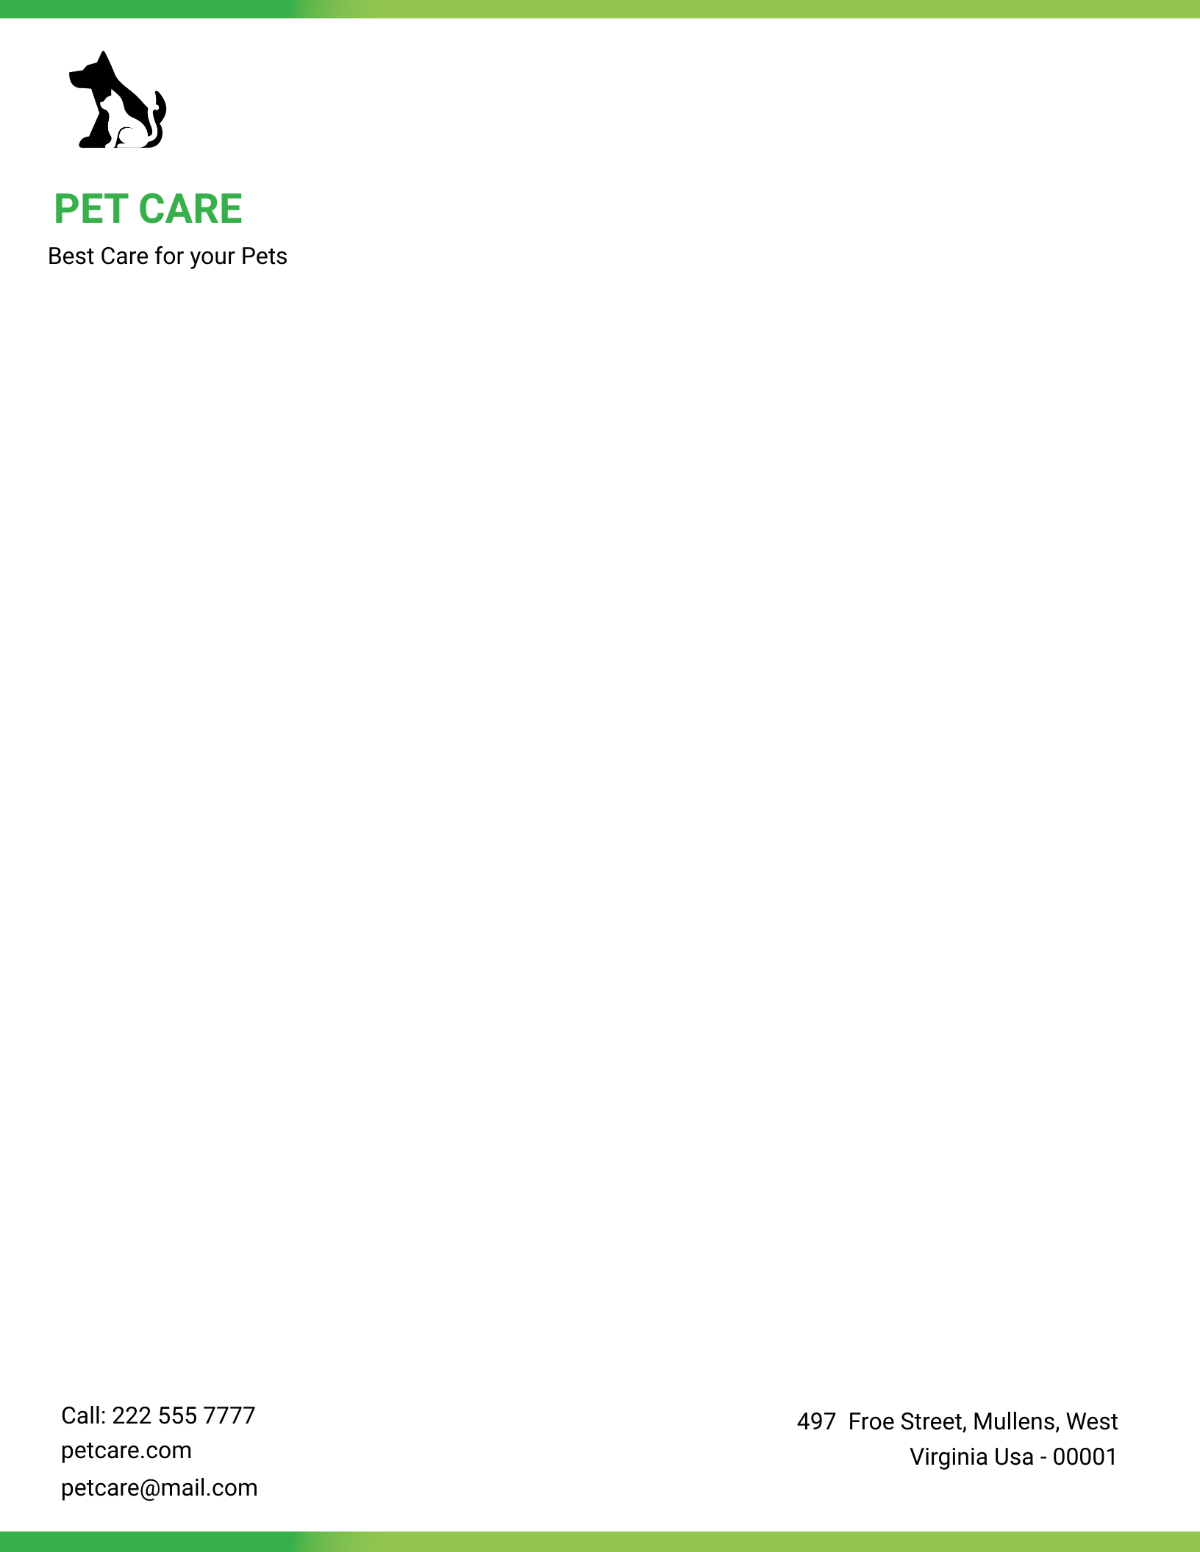 Pet Care Letterhead